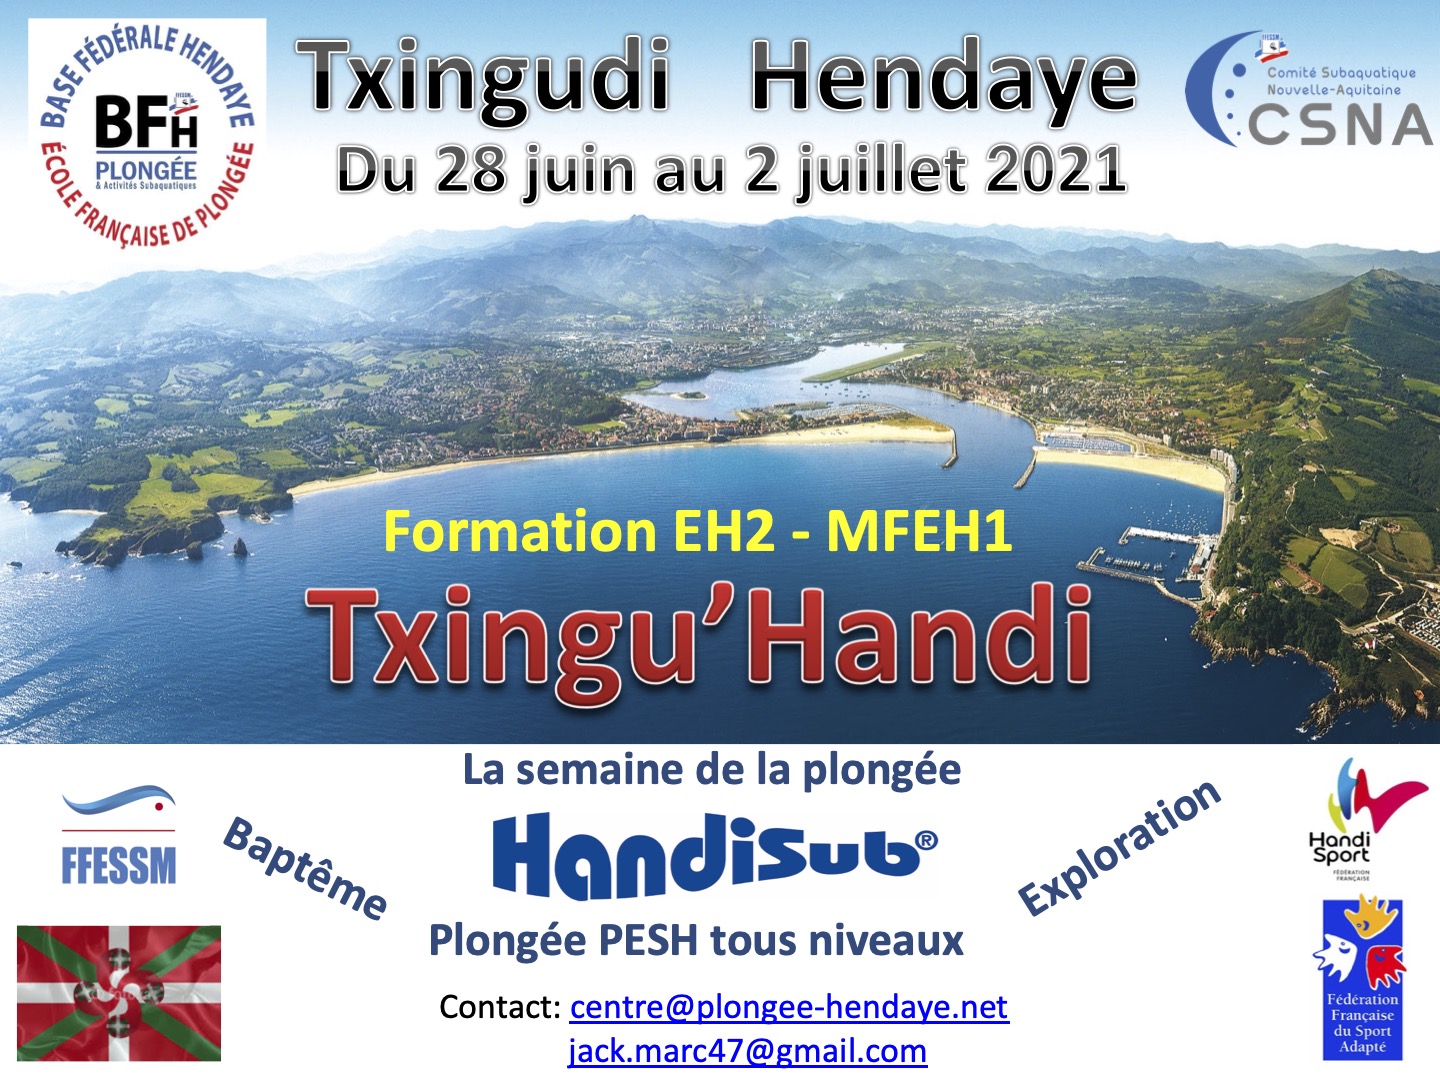 2021 05 TxinguHandi Hendaye 2021